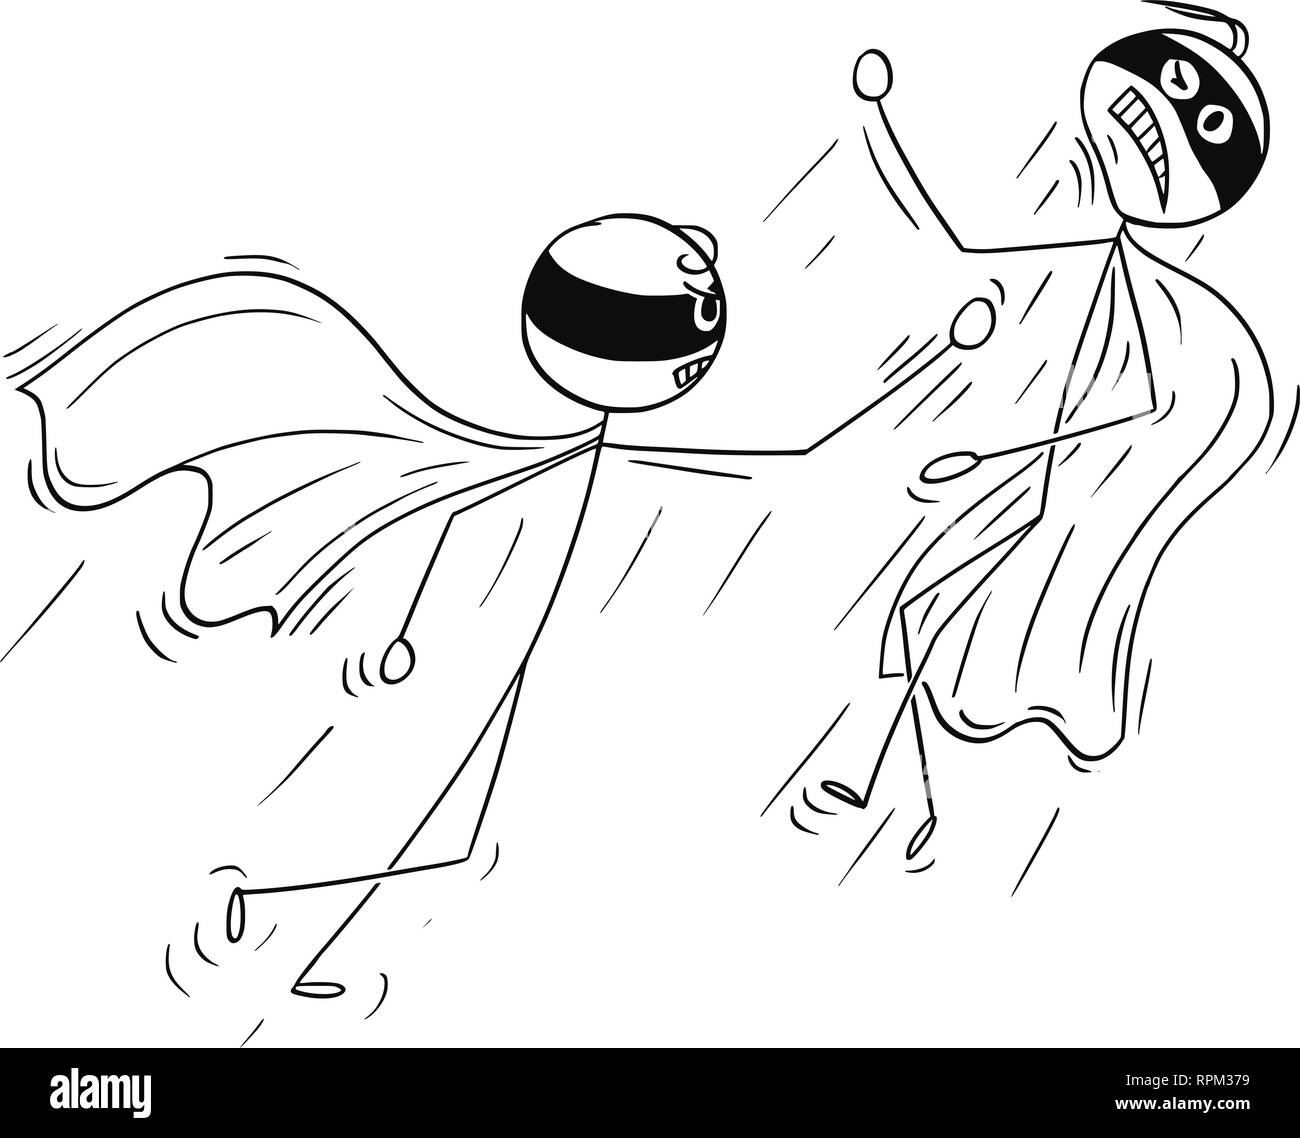 Caricatura de dos super héroes enmascarados luchando juntos Ilustración del Vector